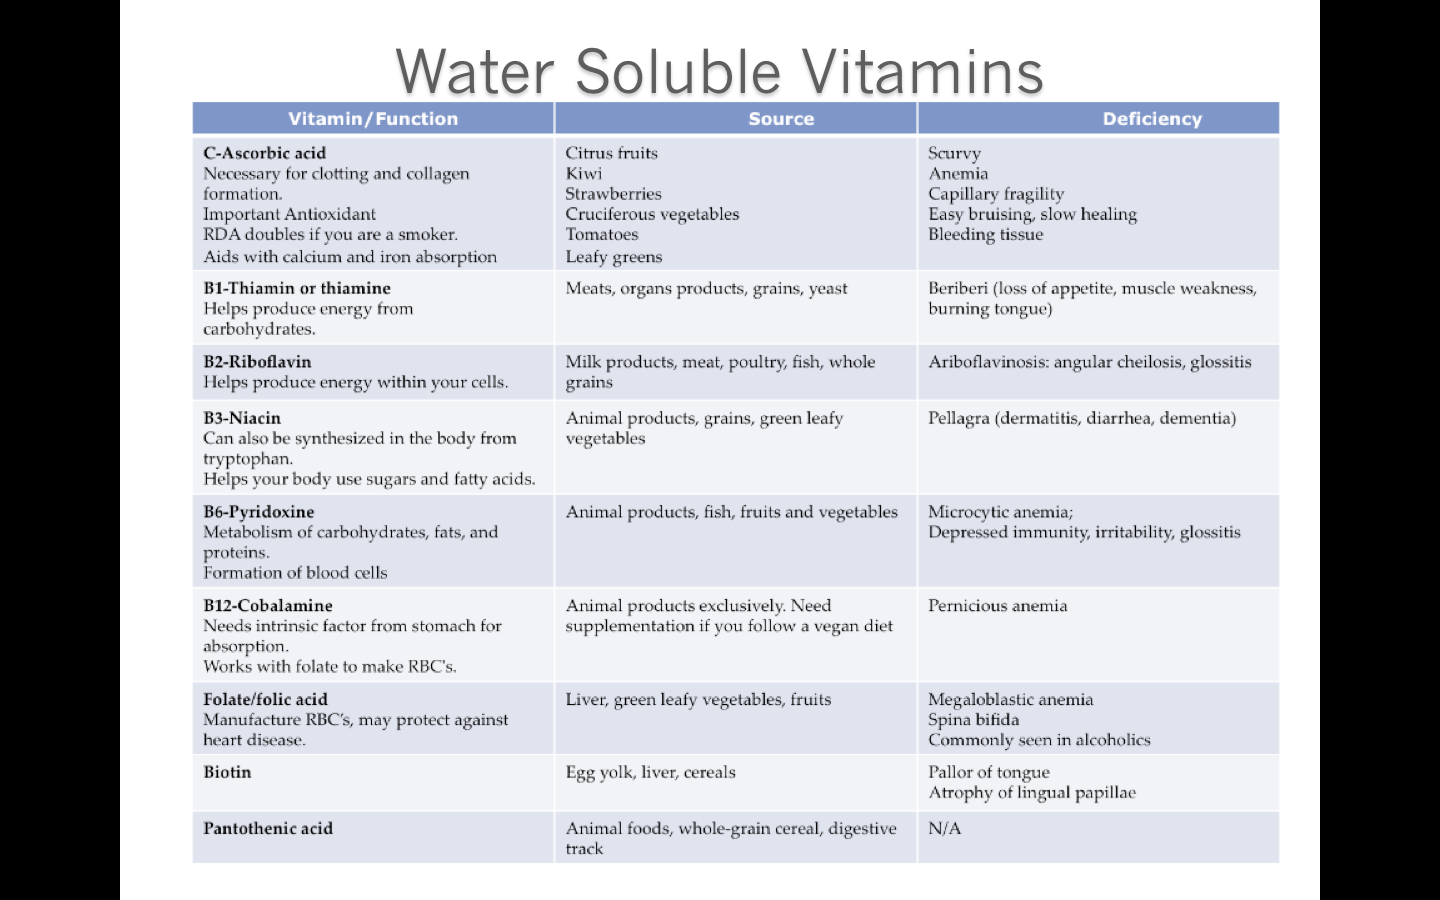 Water Soluble Vitamins tabls